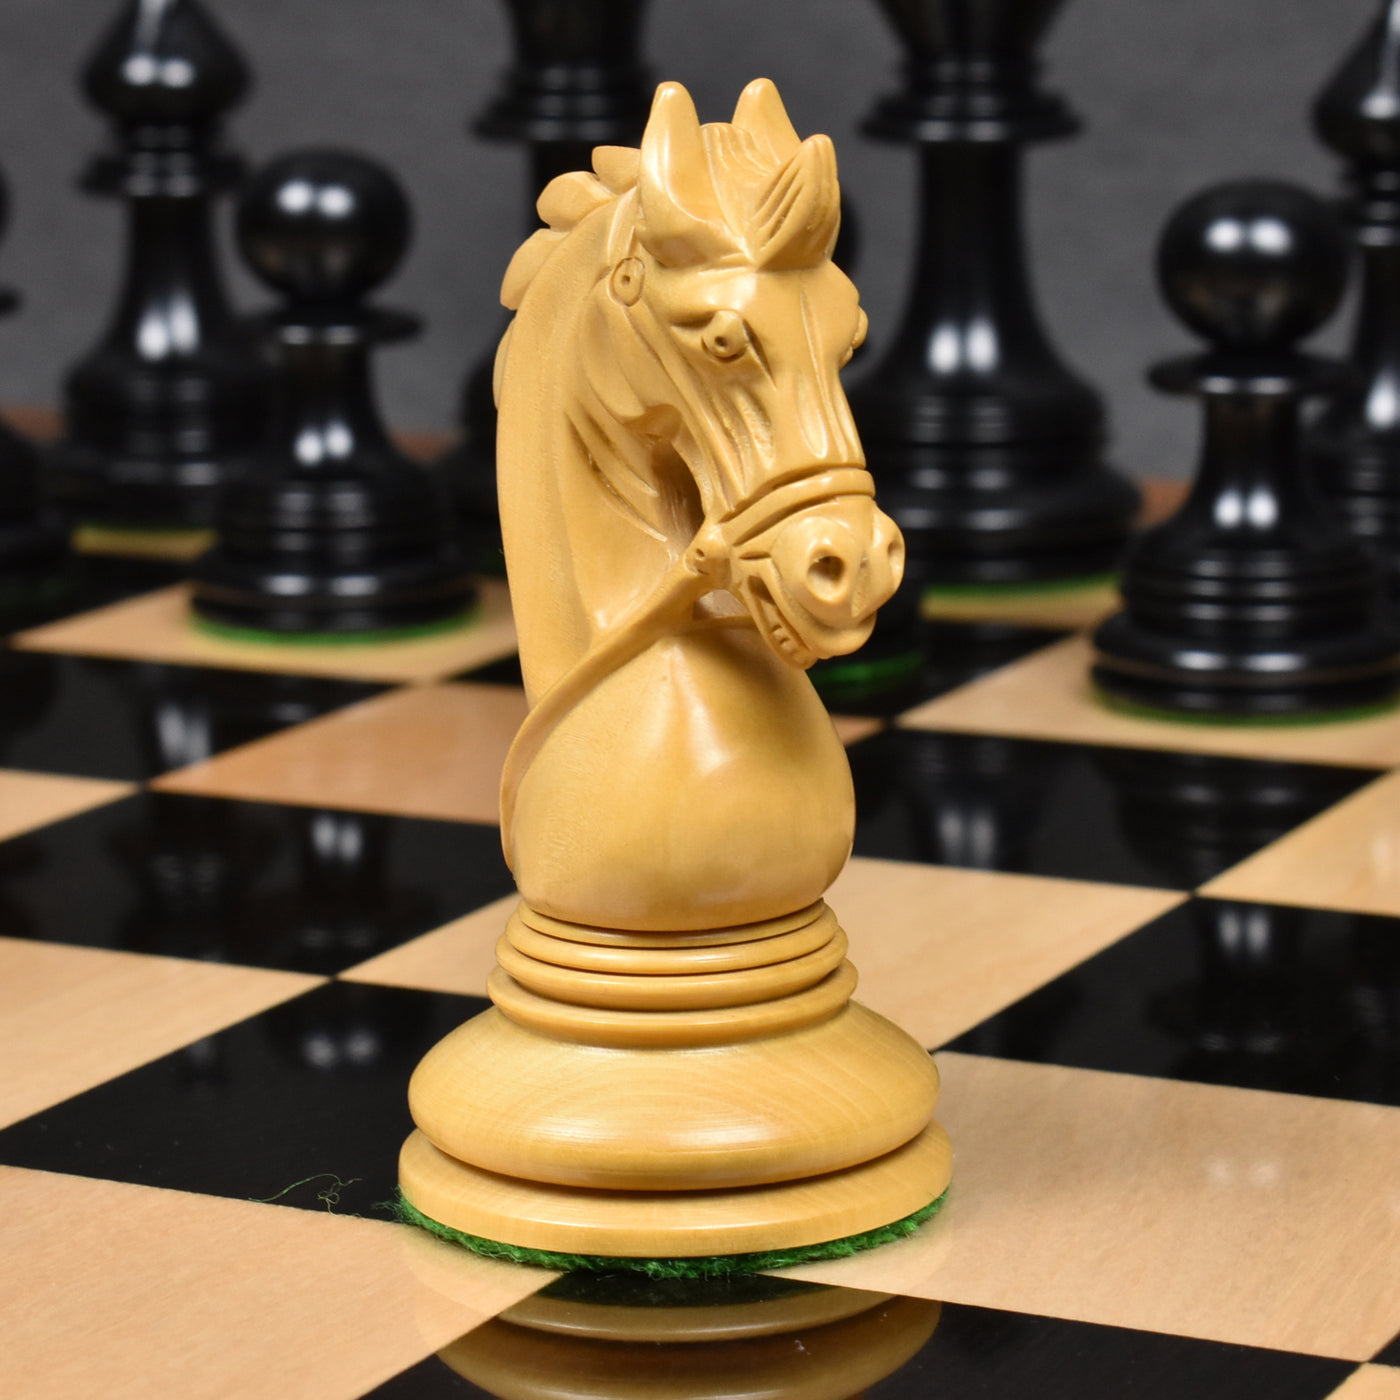 Napoleon Luxury Staunton Chess Pieces Only Set